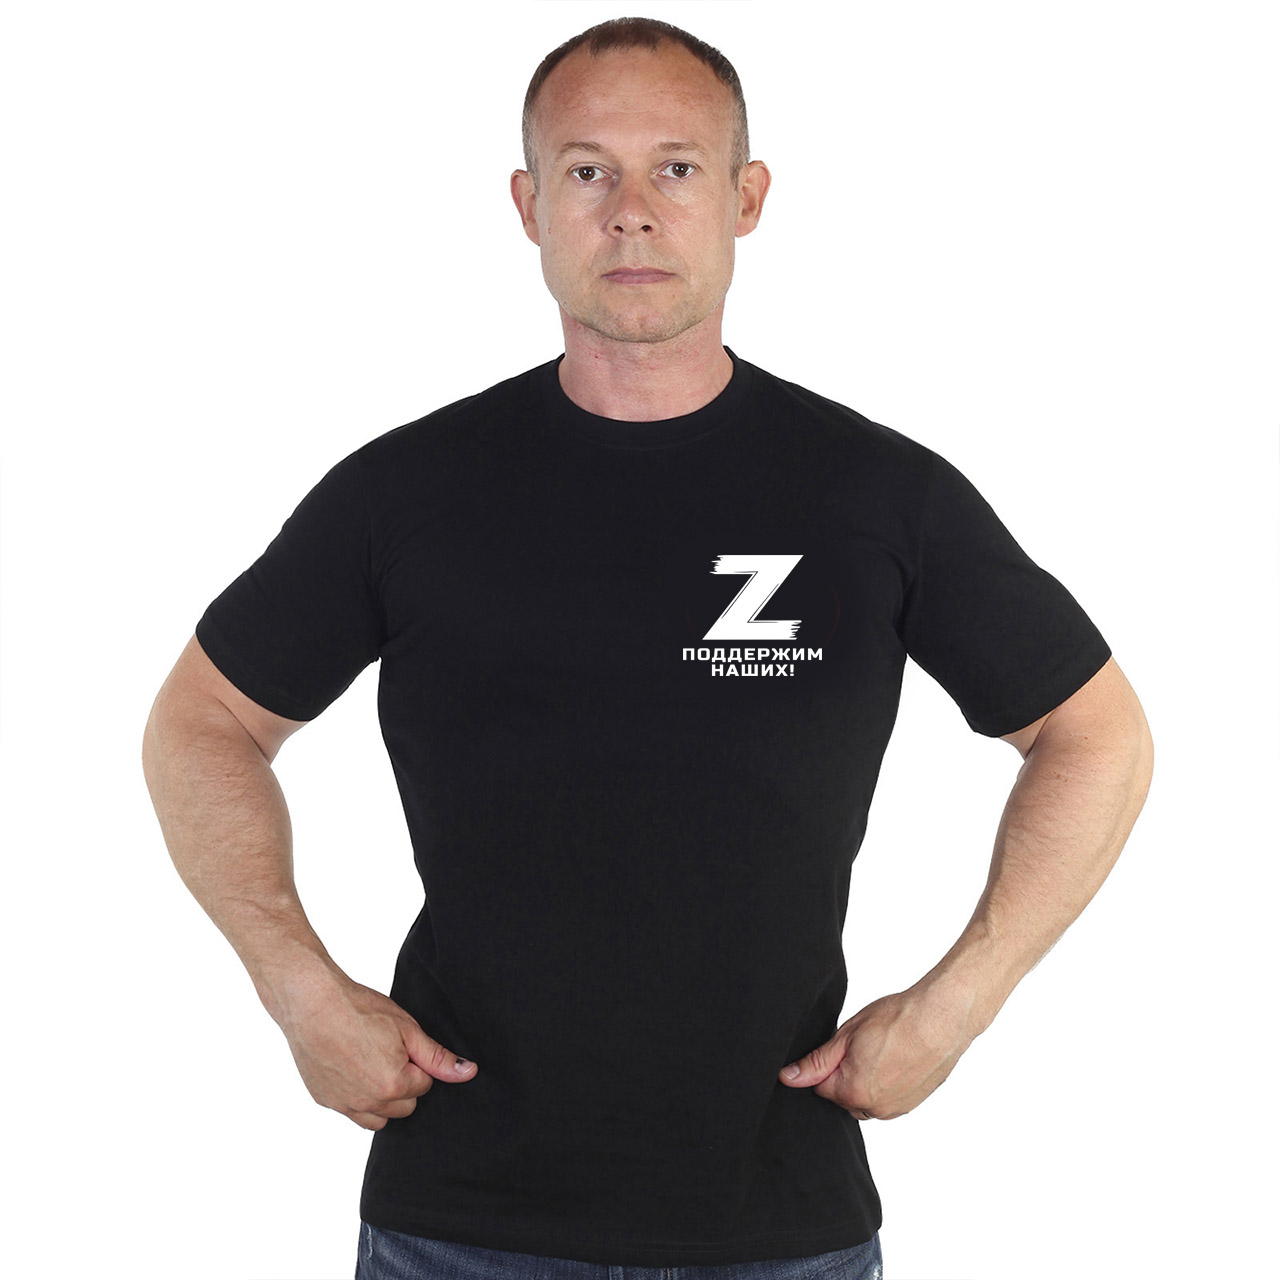 Чёрная футболка с трансфером «Z» – поддержим наших!